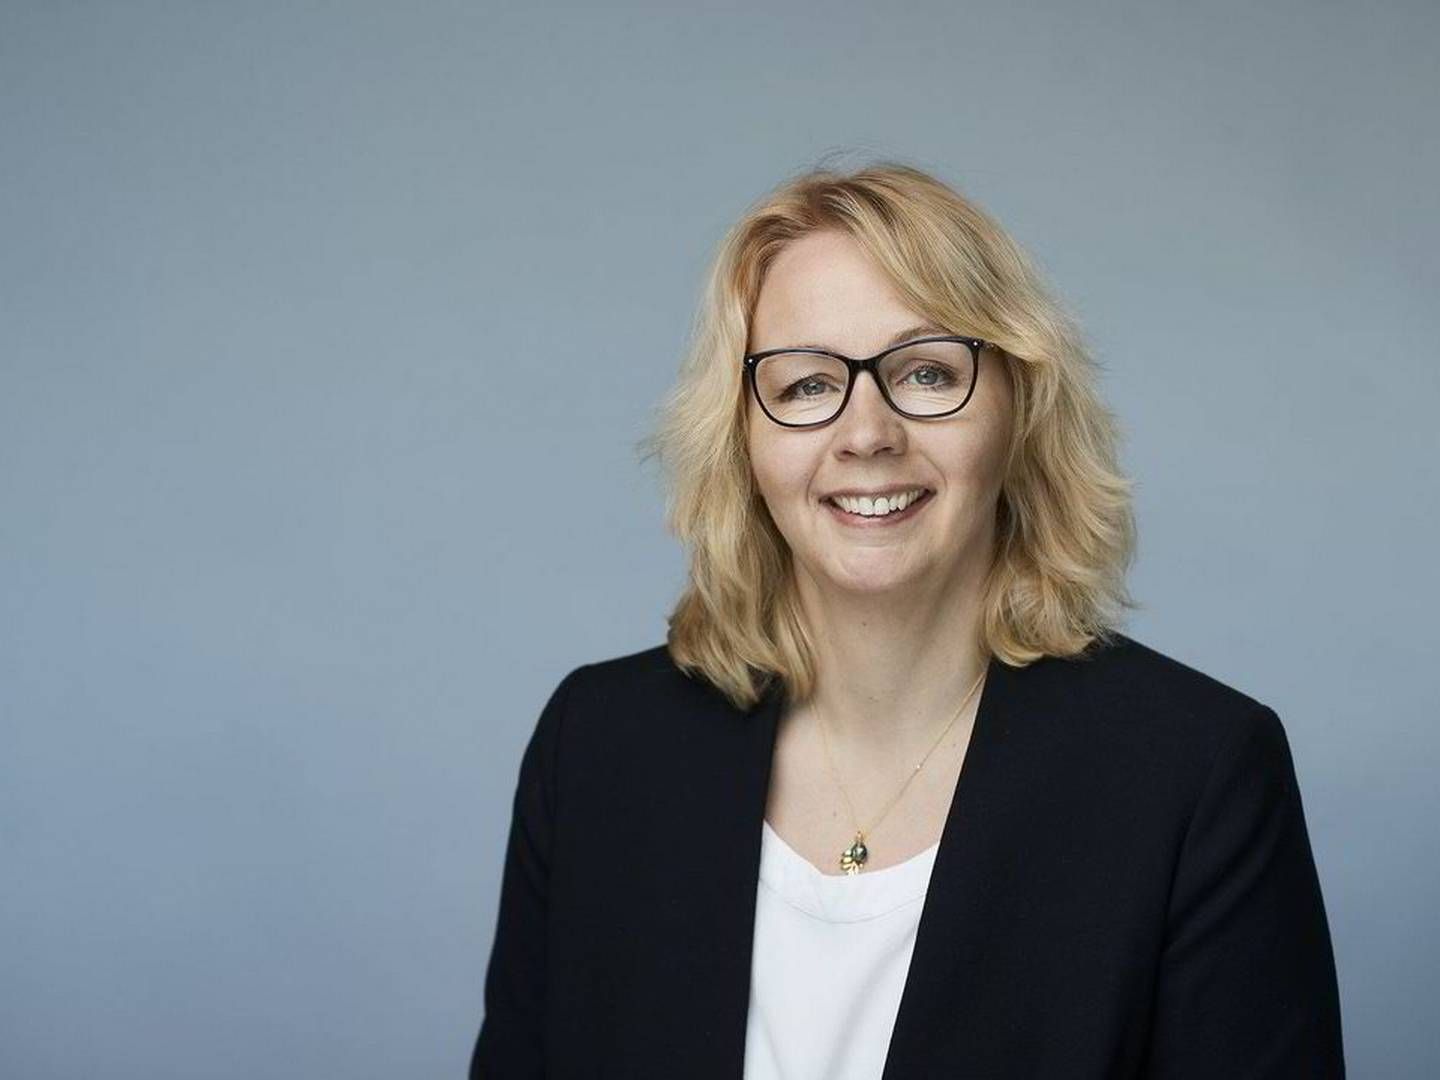 IKKE LIKE BLID: Kristin Lian, konserndirektør i Hafslund Eco, skriver at selskapet er bekymret over det de mener er hastverk i arbeidet med ny skatt. | Foto: Hafslund Eco